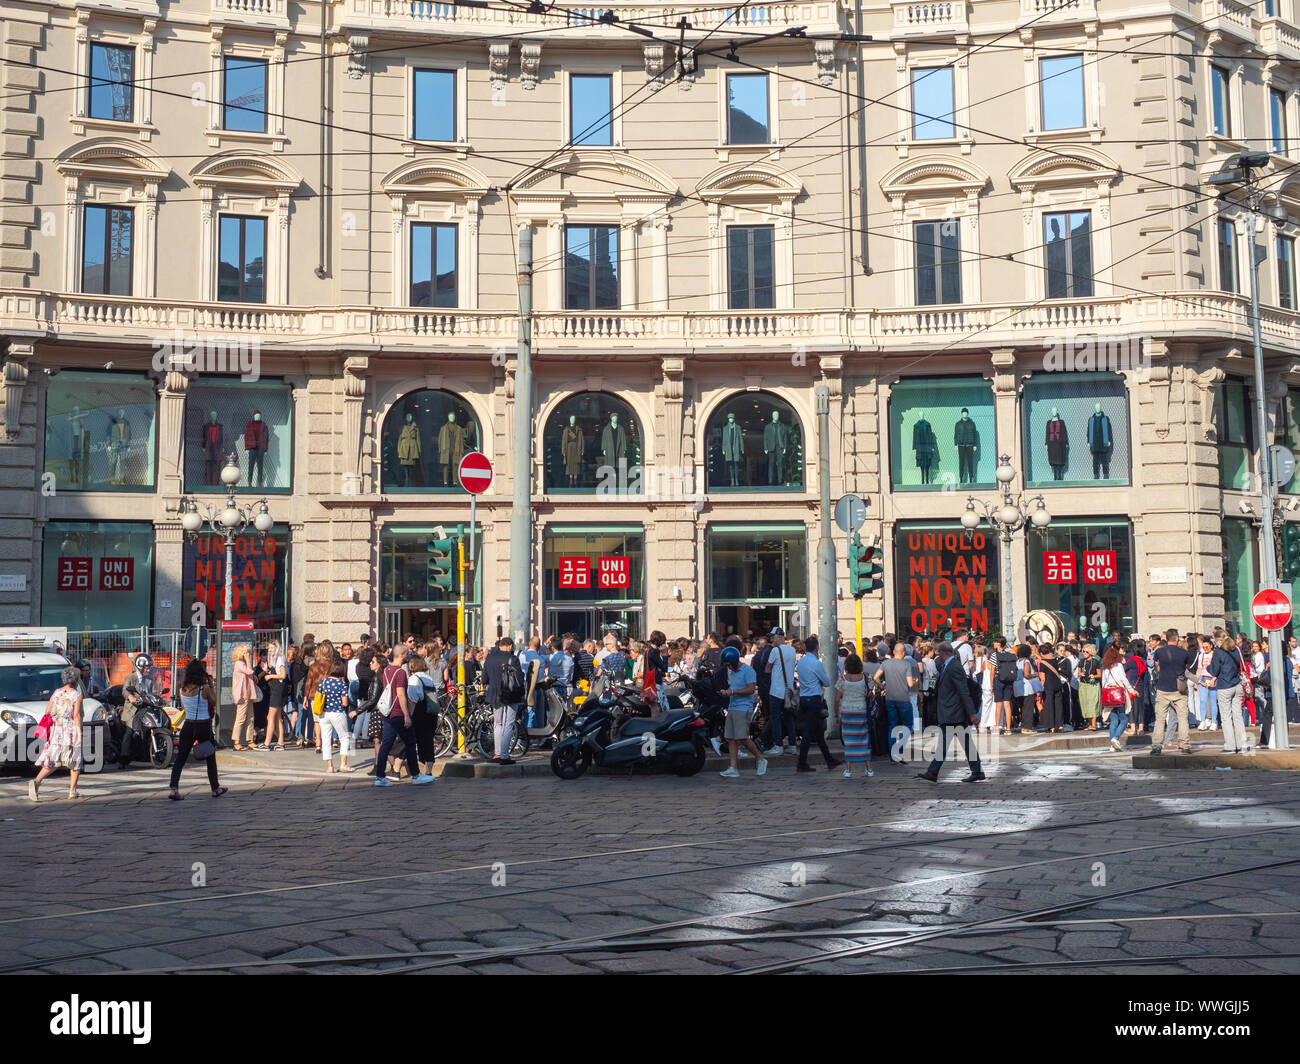 Piazza Cordusio, Mailand, Italien - 13 September, 2019 Menschenmassen  versammelt sich vor der neuen Uniqlo Store warten die Türen geöffnet werden  Stockfotografie - Alamy